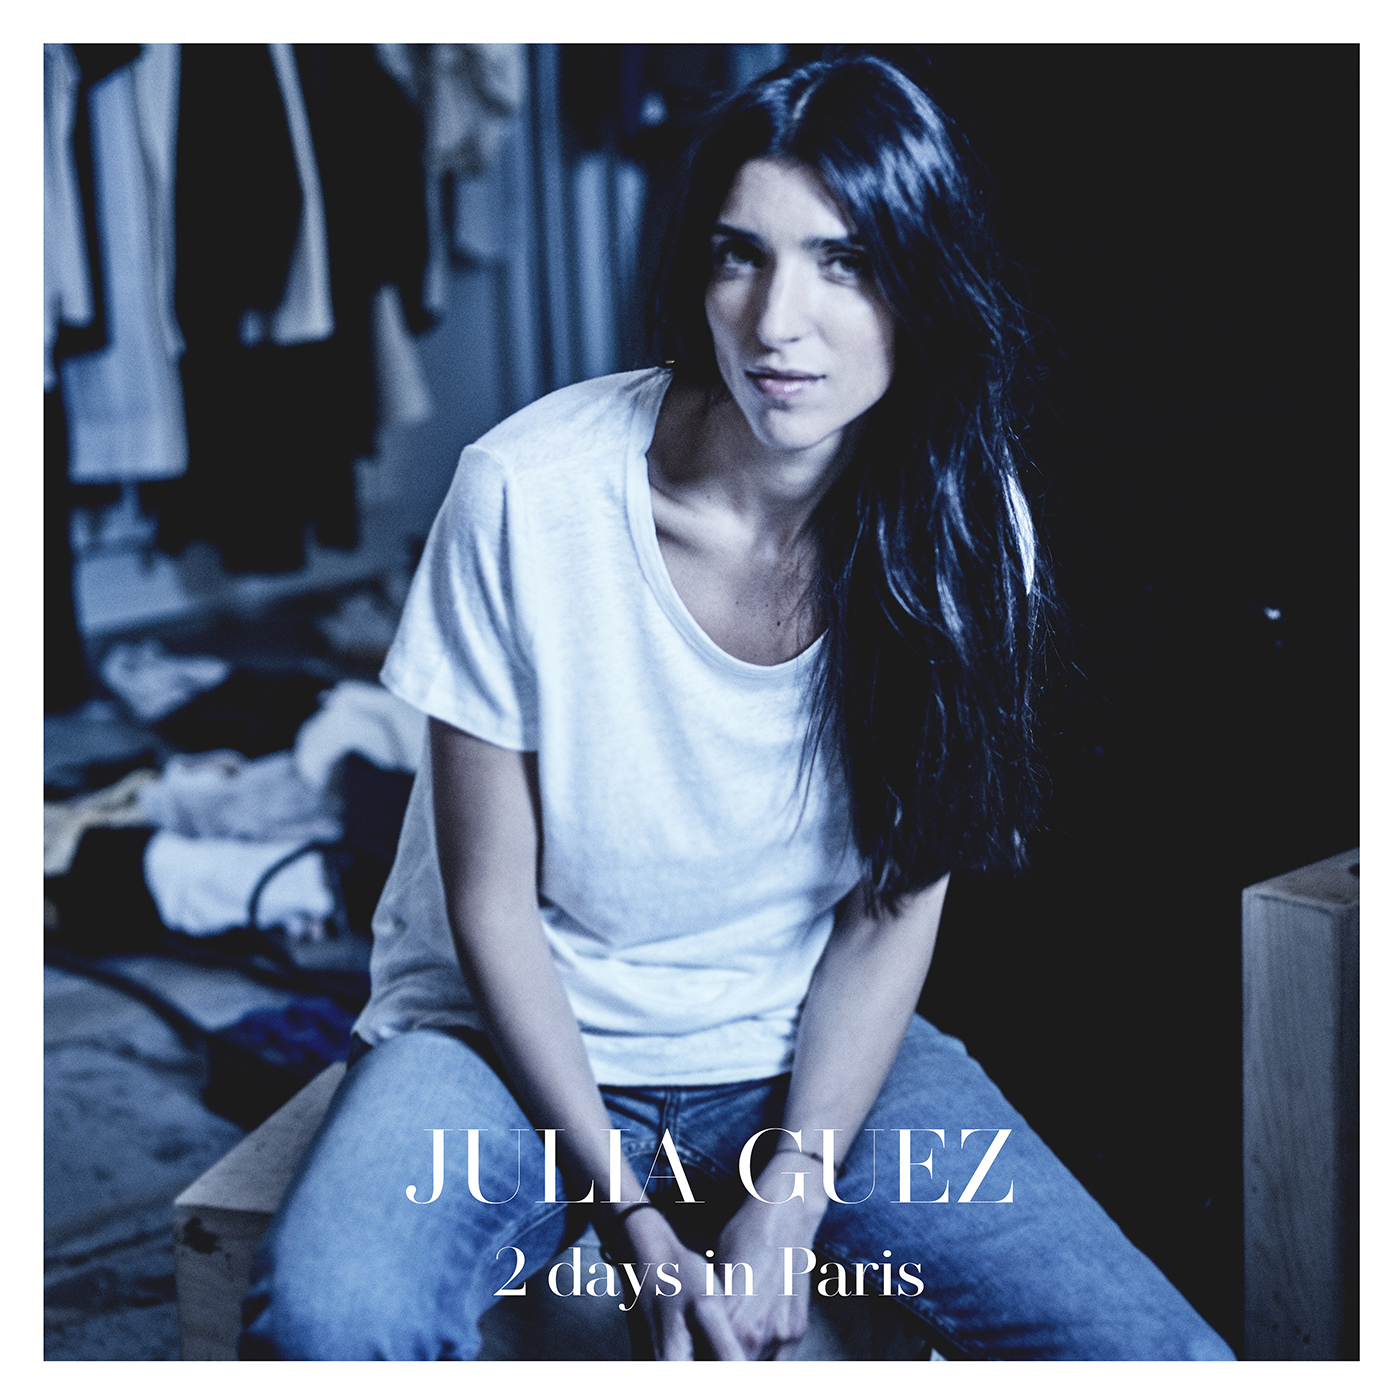 Julia Guez sort 2 Days In Paris, son nouvel EP acoustique